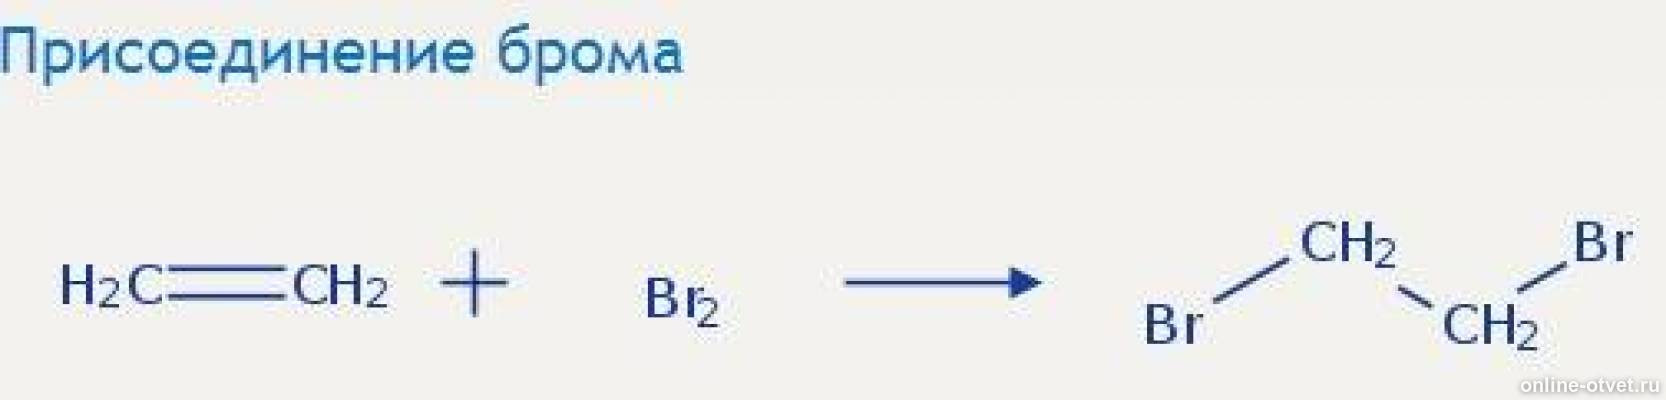 Ацетилен h2o hg2. Присоединение брома. Этанол+CL. Реакция присоединения брома. C2h4 = диэтиловый эфир.